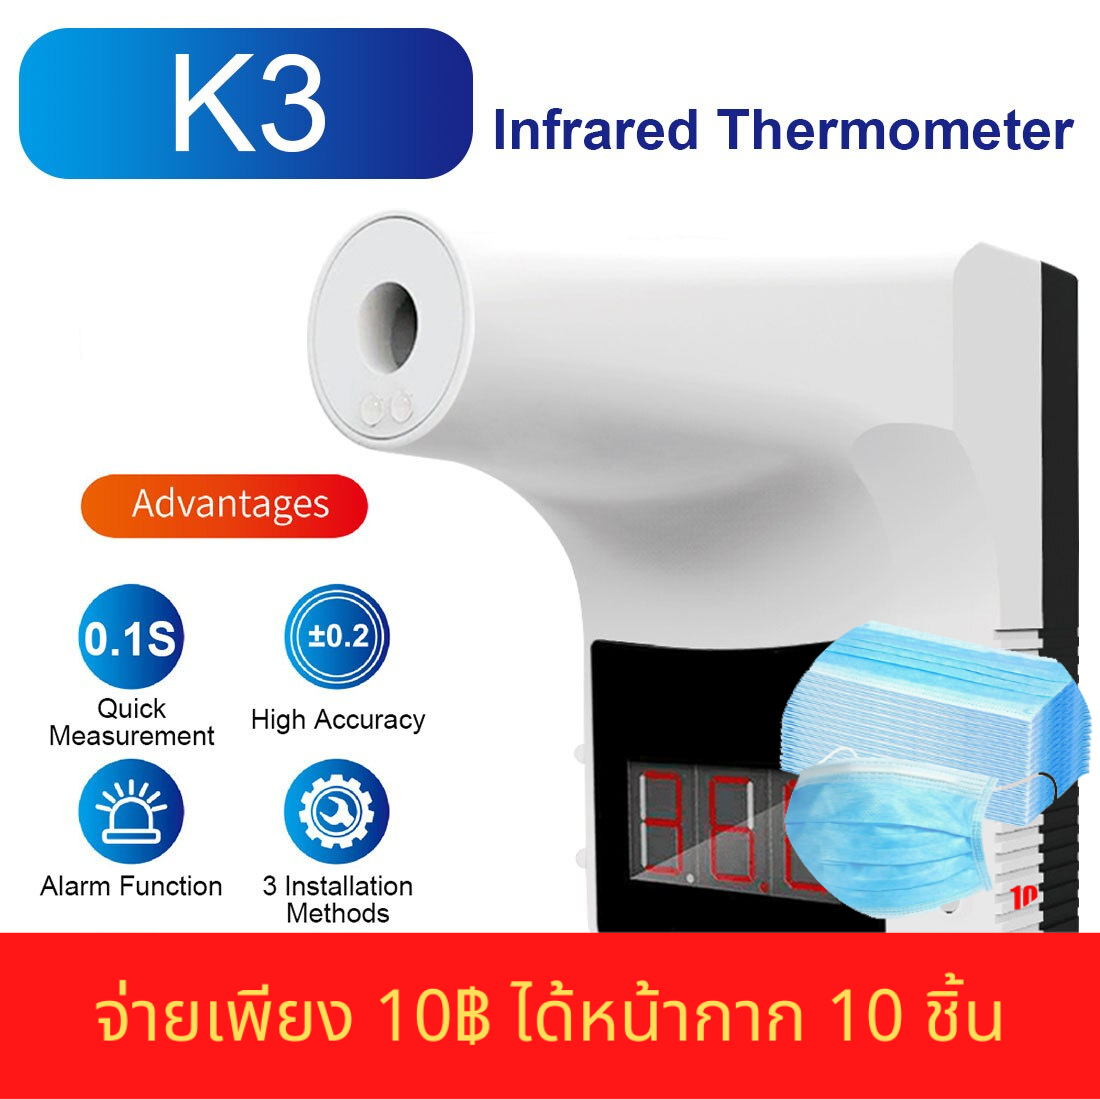 【SA】K9pro เครื่องวัดอุณหภูมิดิจิตอลแบบไม่สัมผัสสำหรับโรงงานสำนักงานโรงเรียนเซ็นเซอร์ IR ความแม่นยำสูงเครื่องมือวัดอุณหภูมิแบบติดผนัง